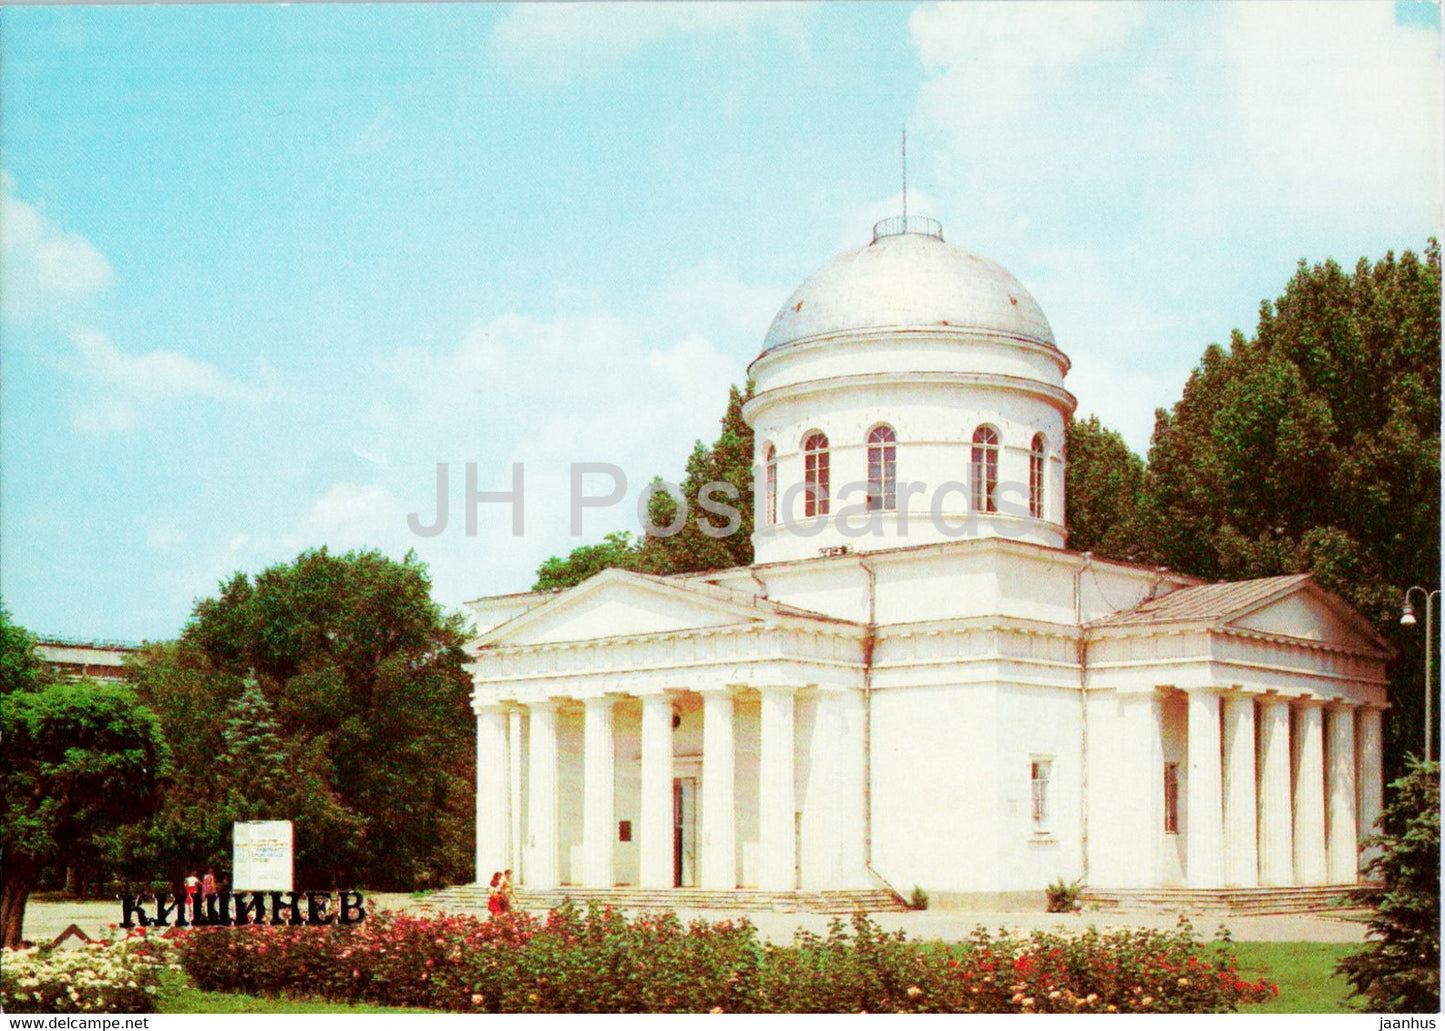 Victory Park - Exhibition Hall - Chisinau - Kishinev - 1 - 1983 - Moldova USSR - unused - JH Postcards